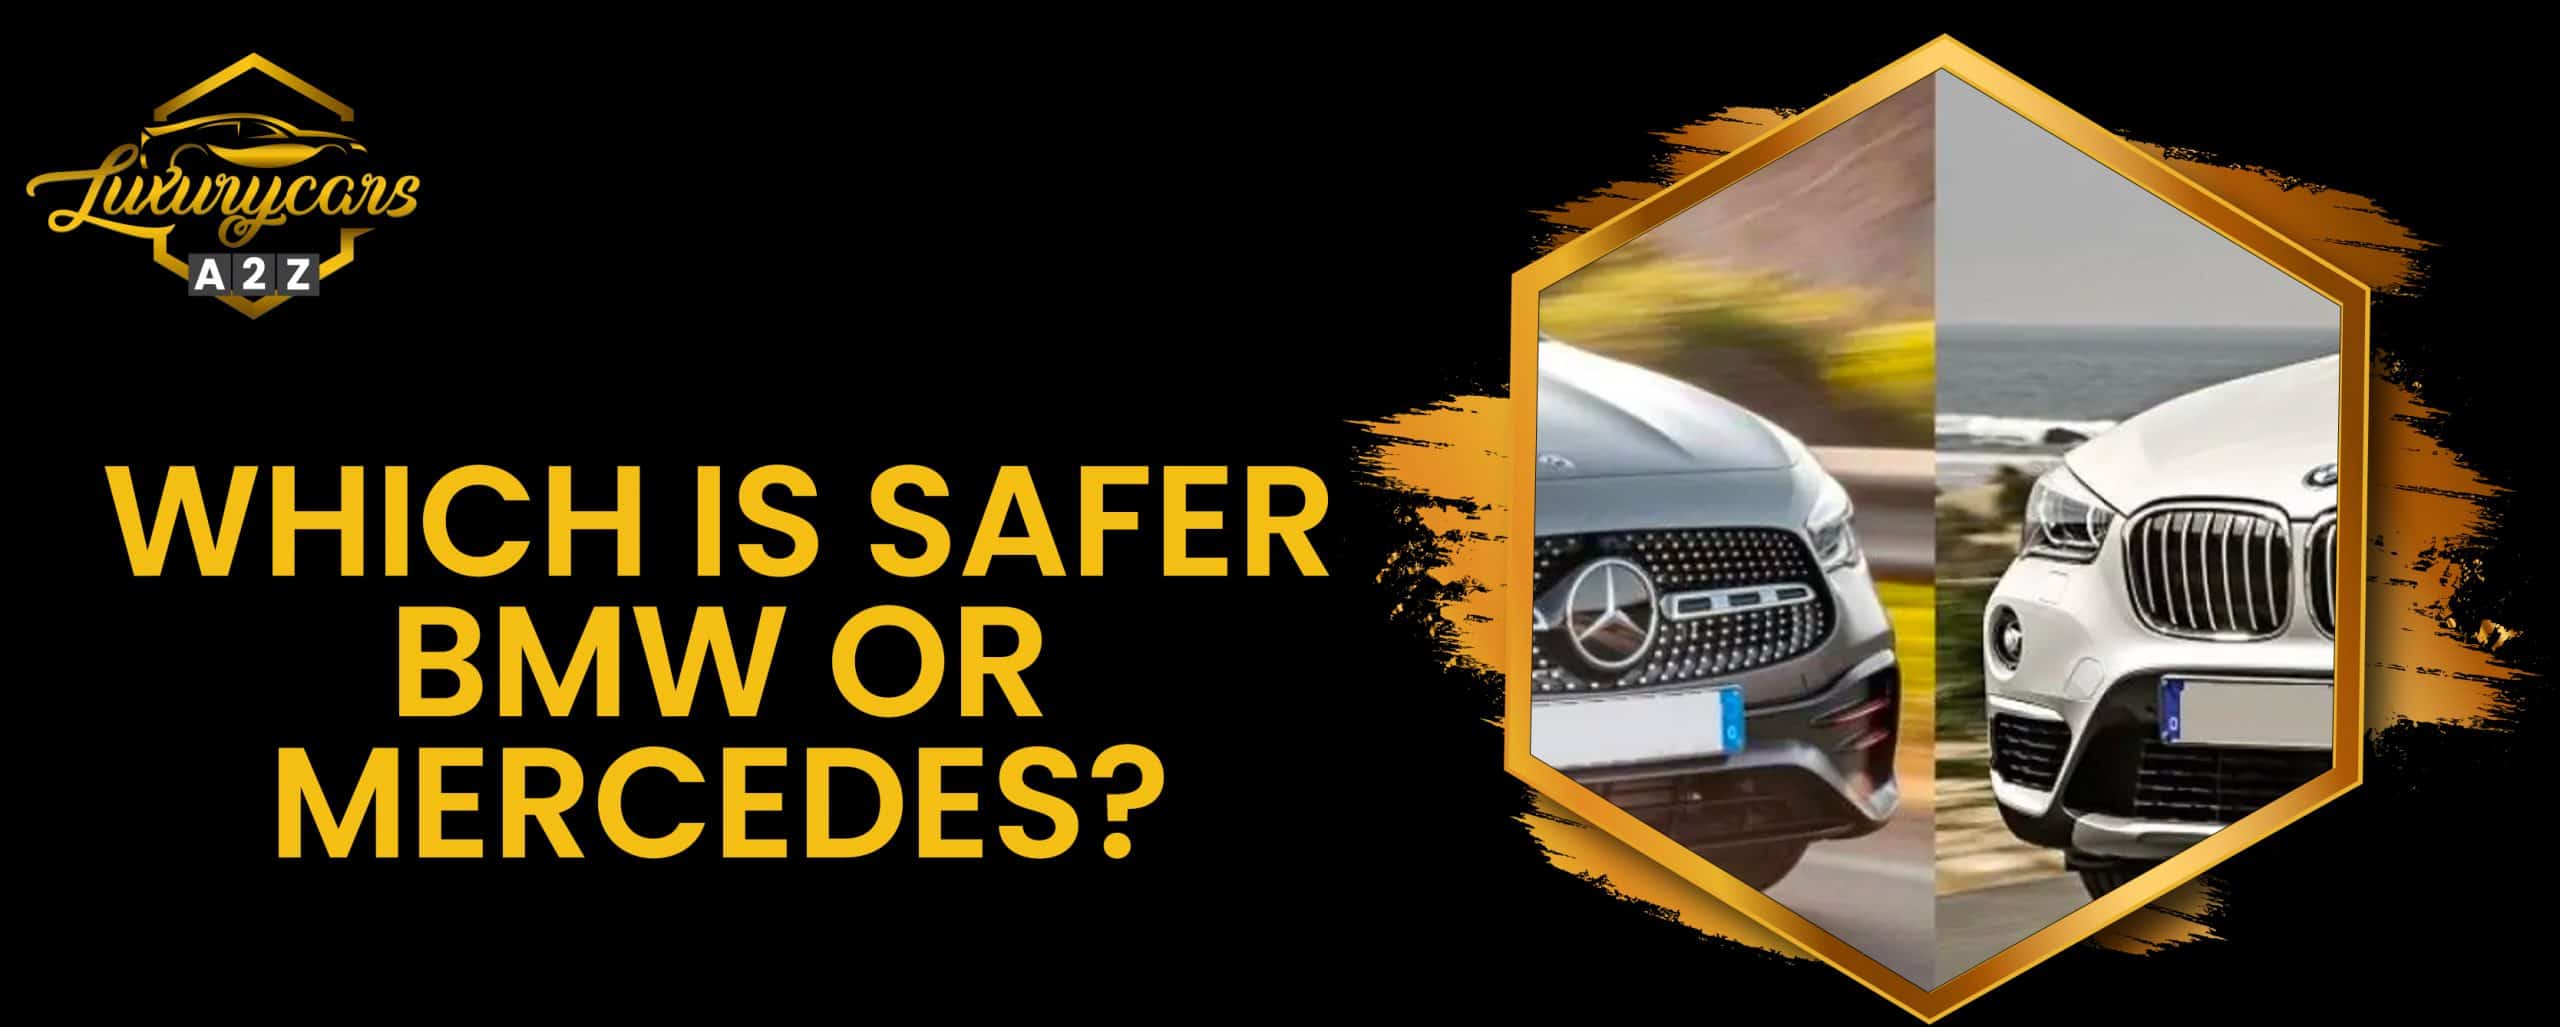 Qu'est-ce qui est plus sûr - BMW ou Mercedes ?